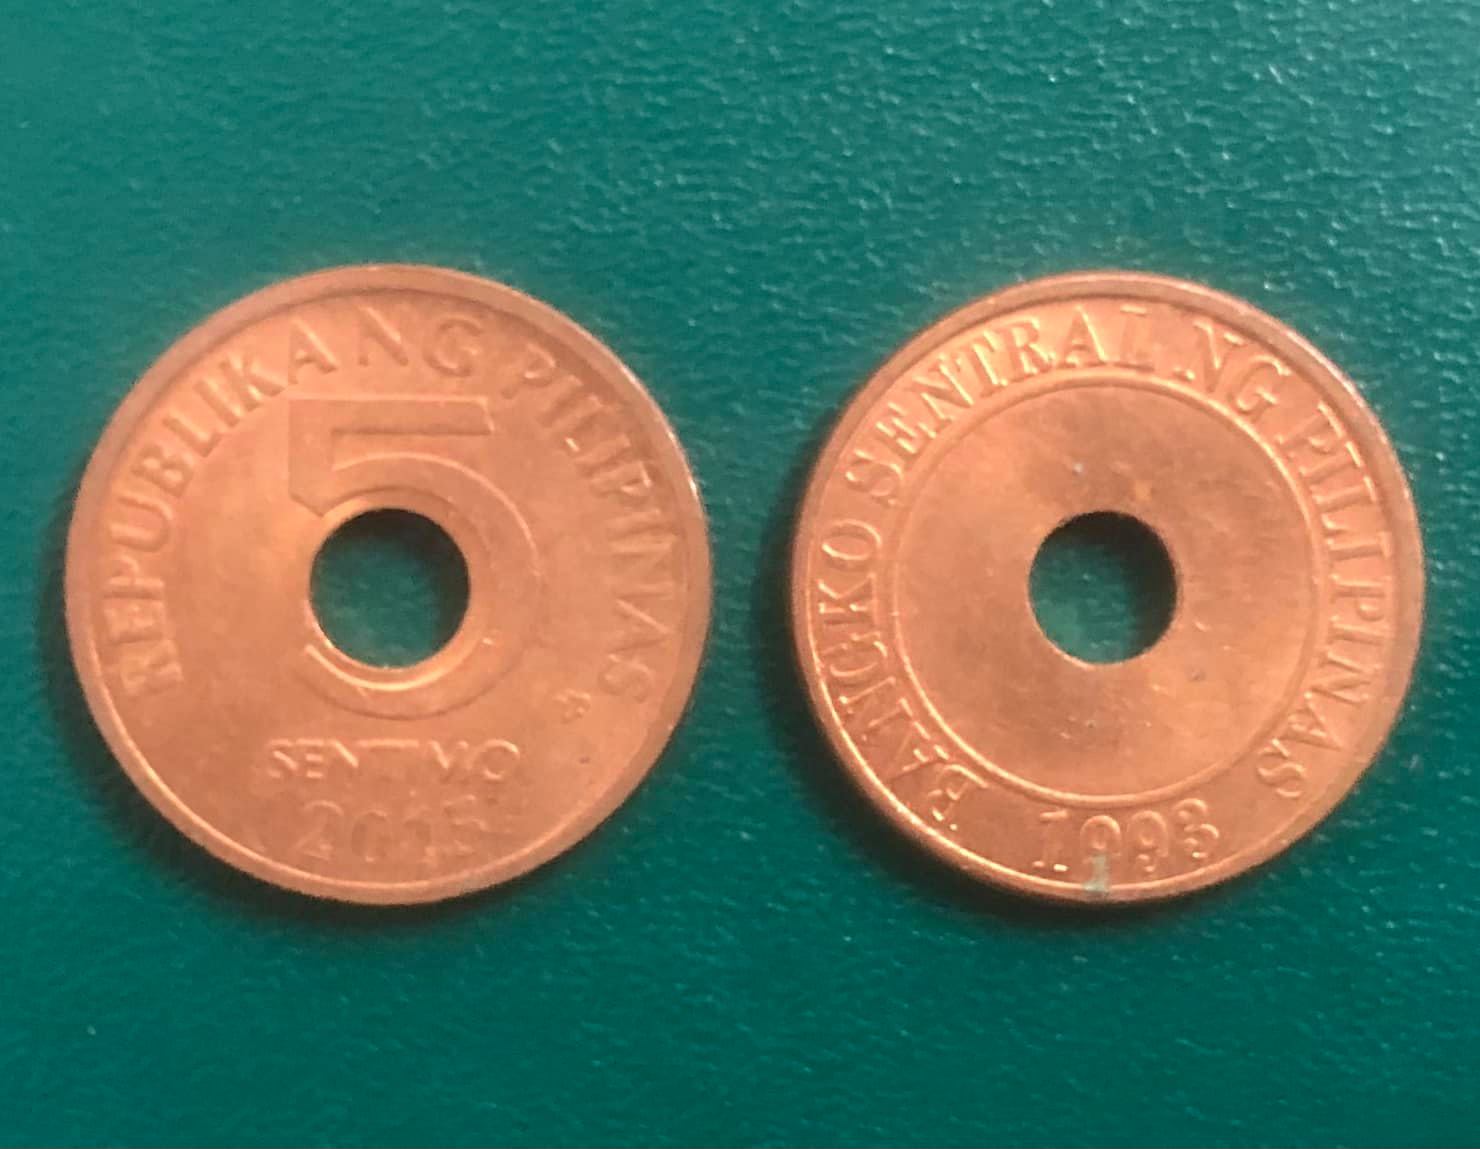 Đồng xu Philippines 5 sentimo nhỏ, xinh, được coi là đồng xu may mắn của người Phi